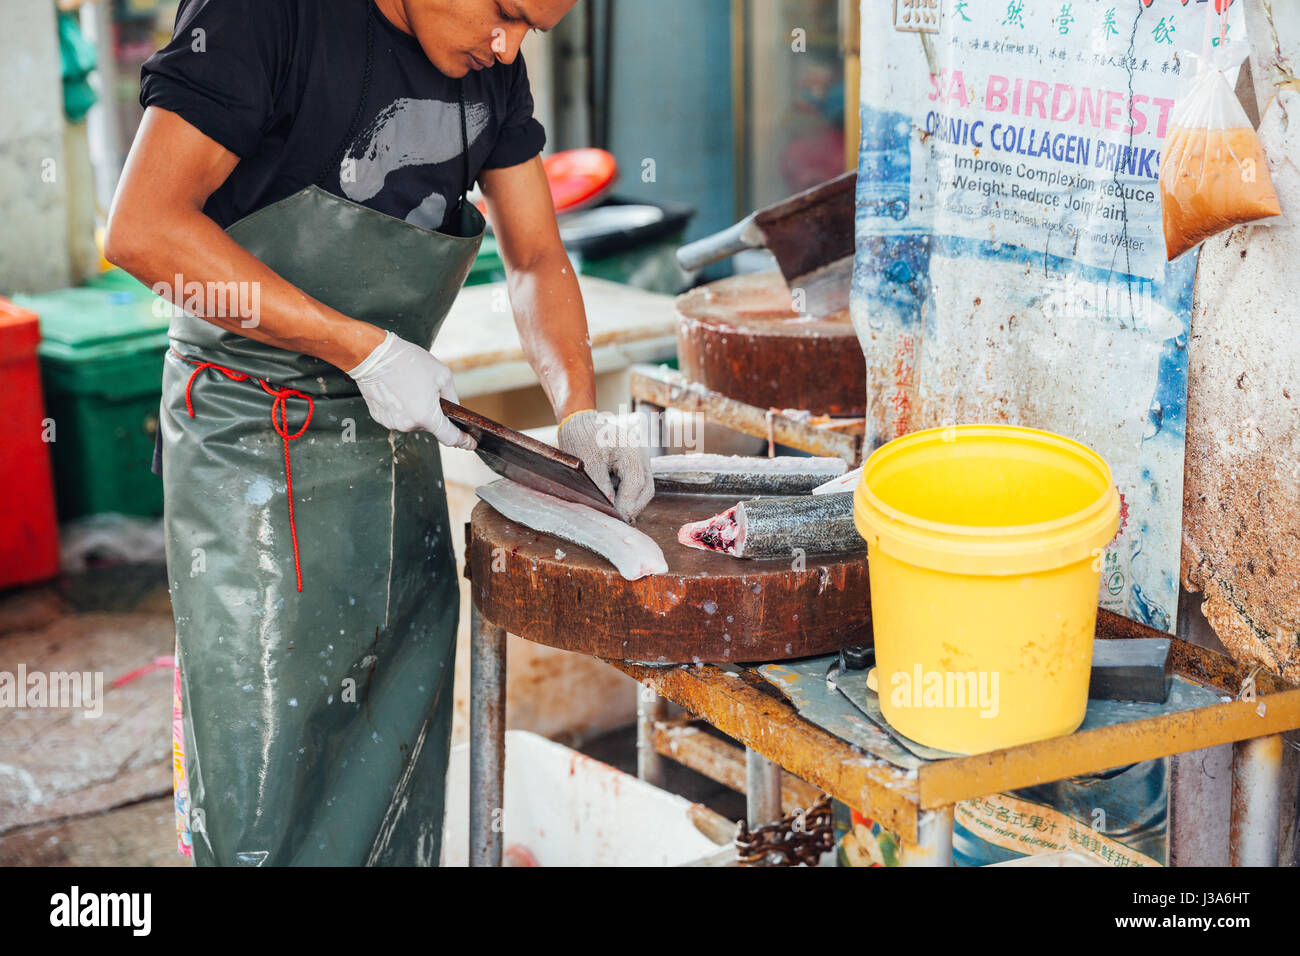 GEORGE TOWN, MALAYSIA - März 23: Mann bereiten die Fische zum Verkauf auf dem nassen Markt am 23. März 2016 in George Town, Malaysia. Stockfoto